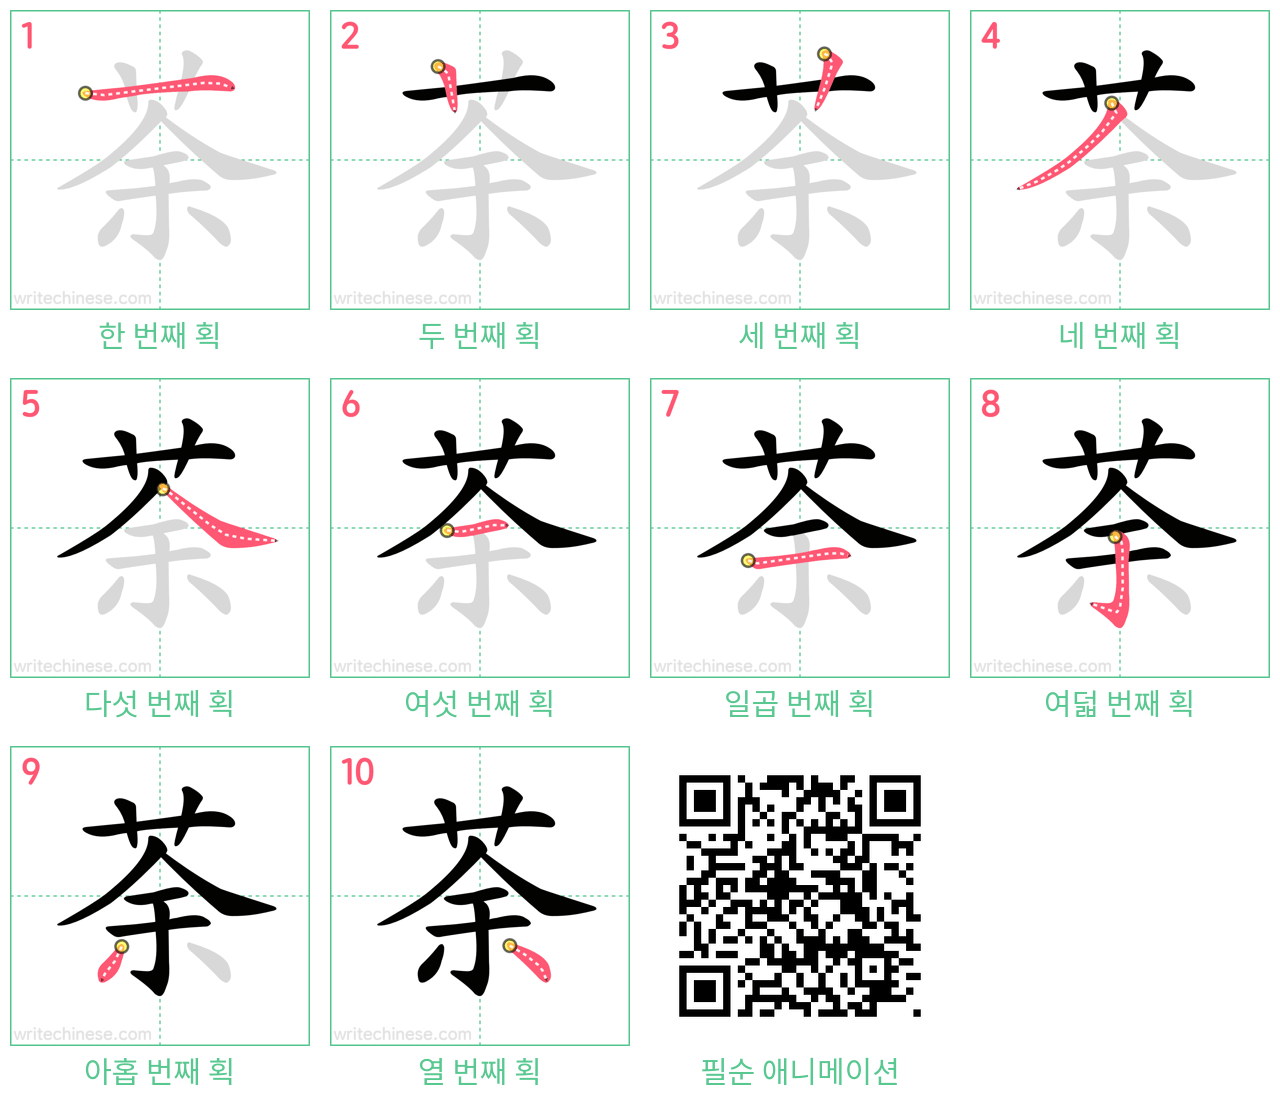 荼 step-by-step stroke order diagrams